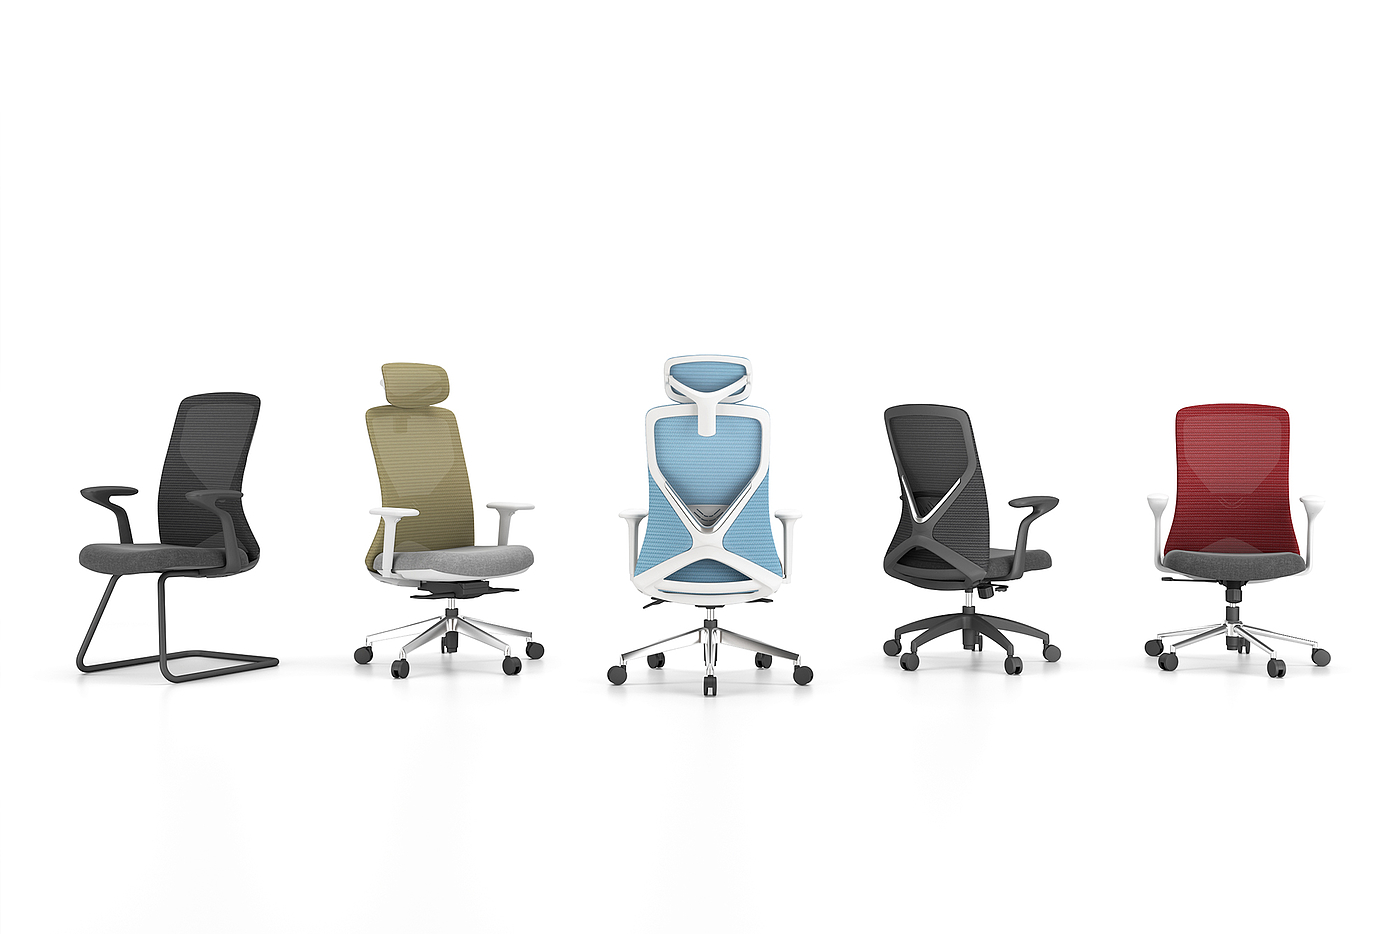 椅子设计，家具设计，人体工程学设计，办公椅设计，坐具设计，